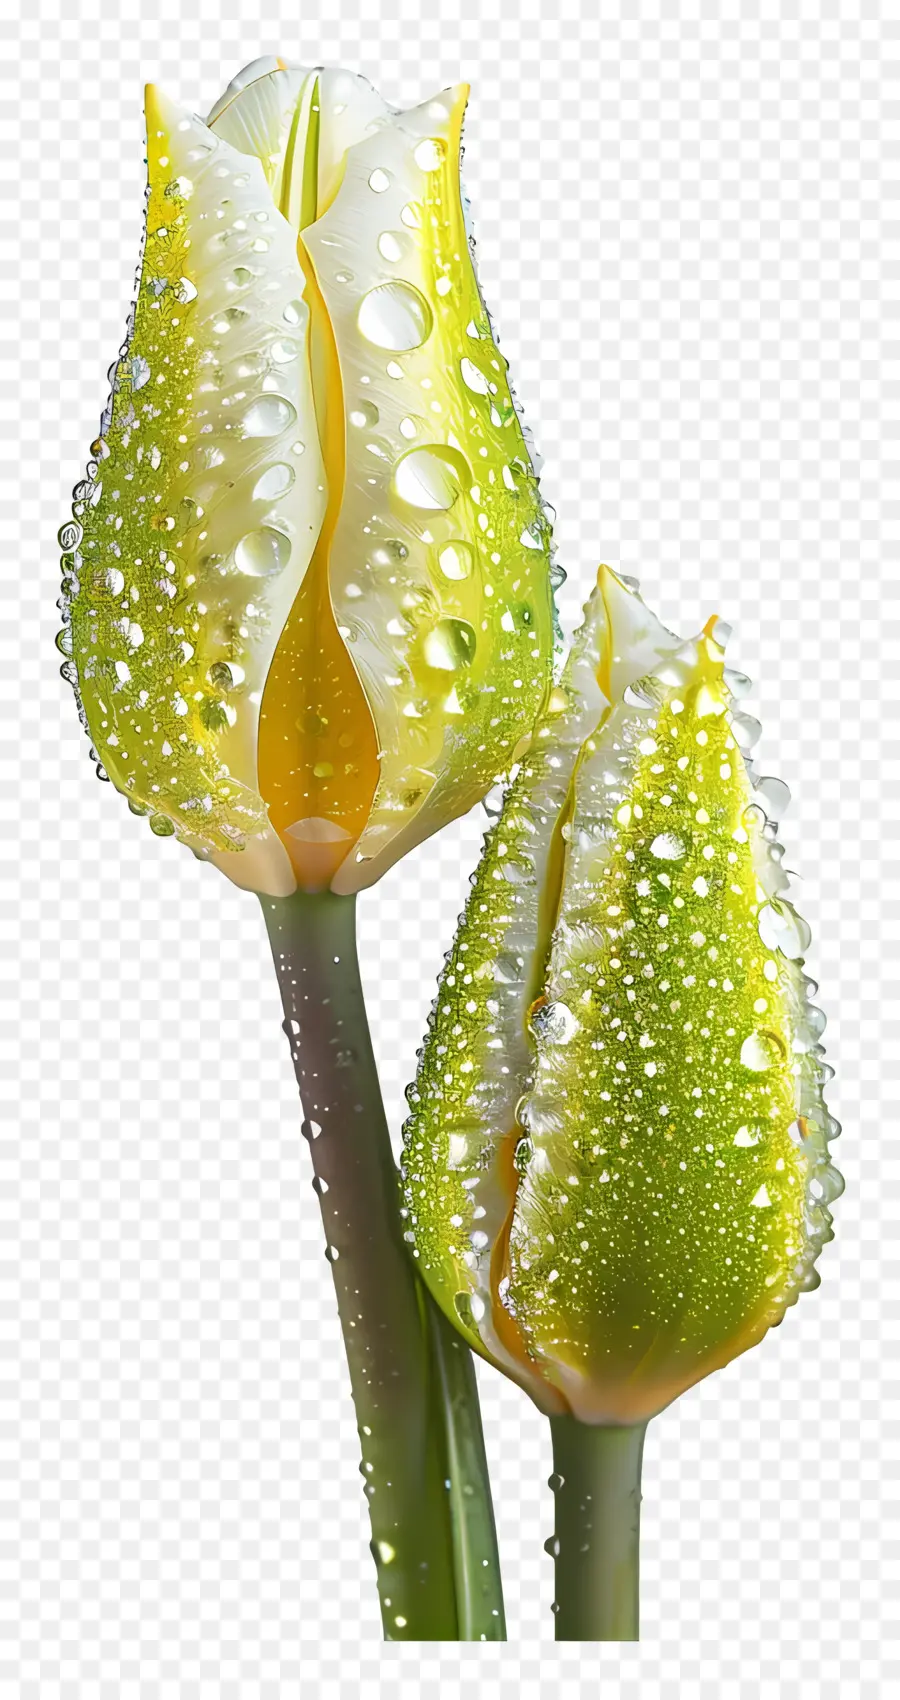 giọt nước - Hai hoa tulip màu vàng với giọt nước